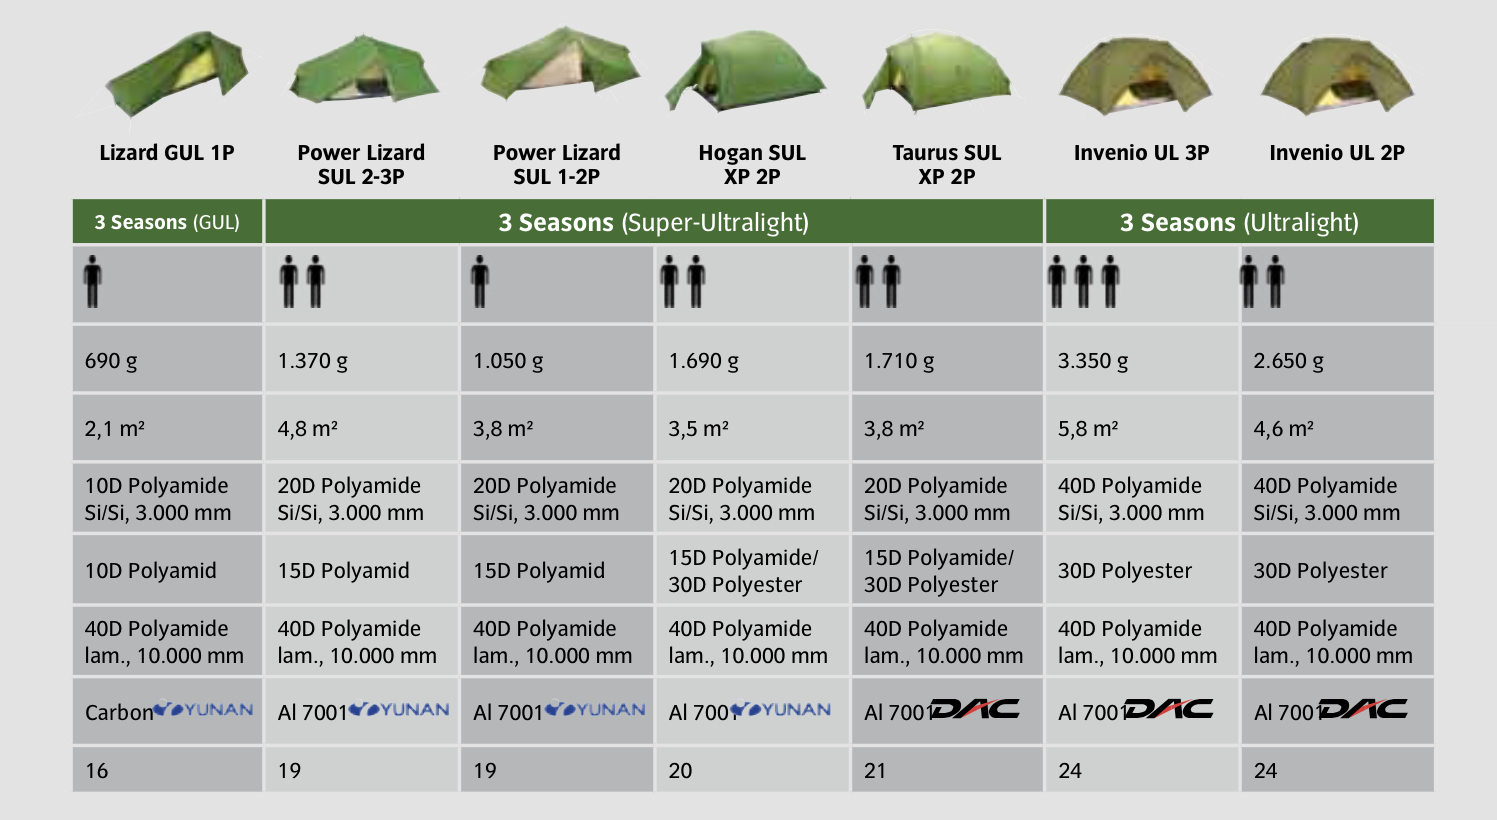 Les tentes 3 saisons giga-ultralight, super-ultralight, et ultralight